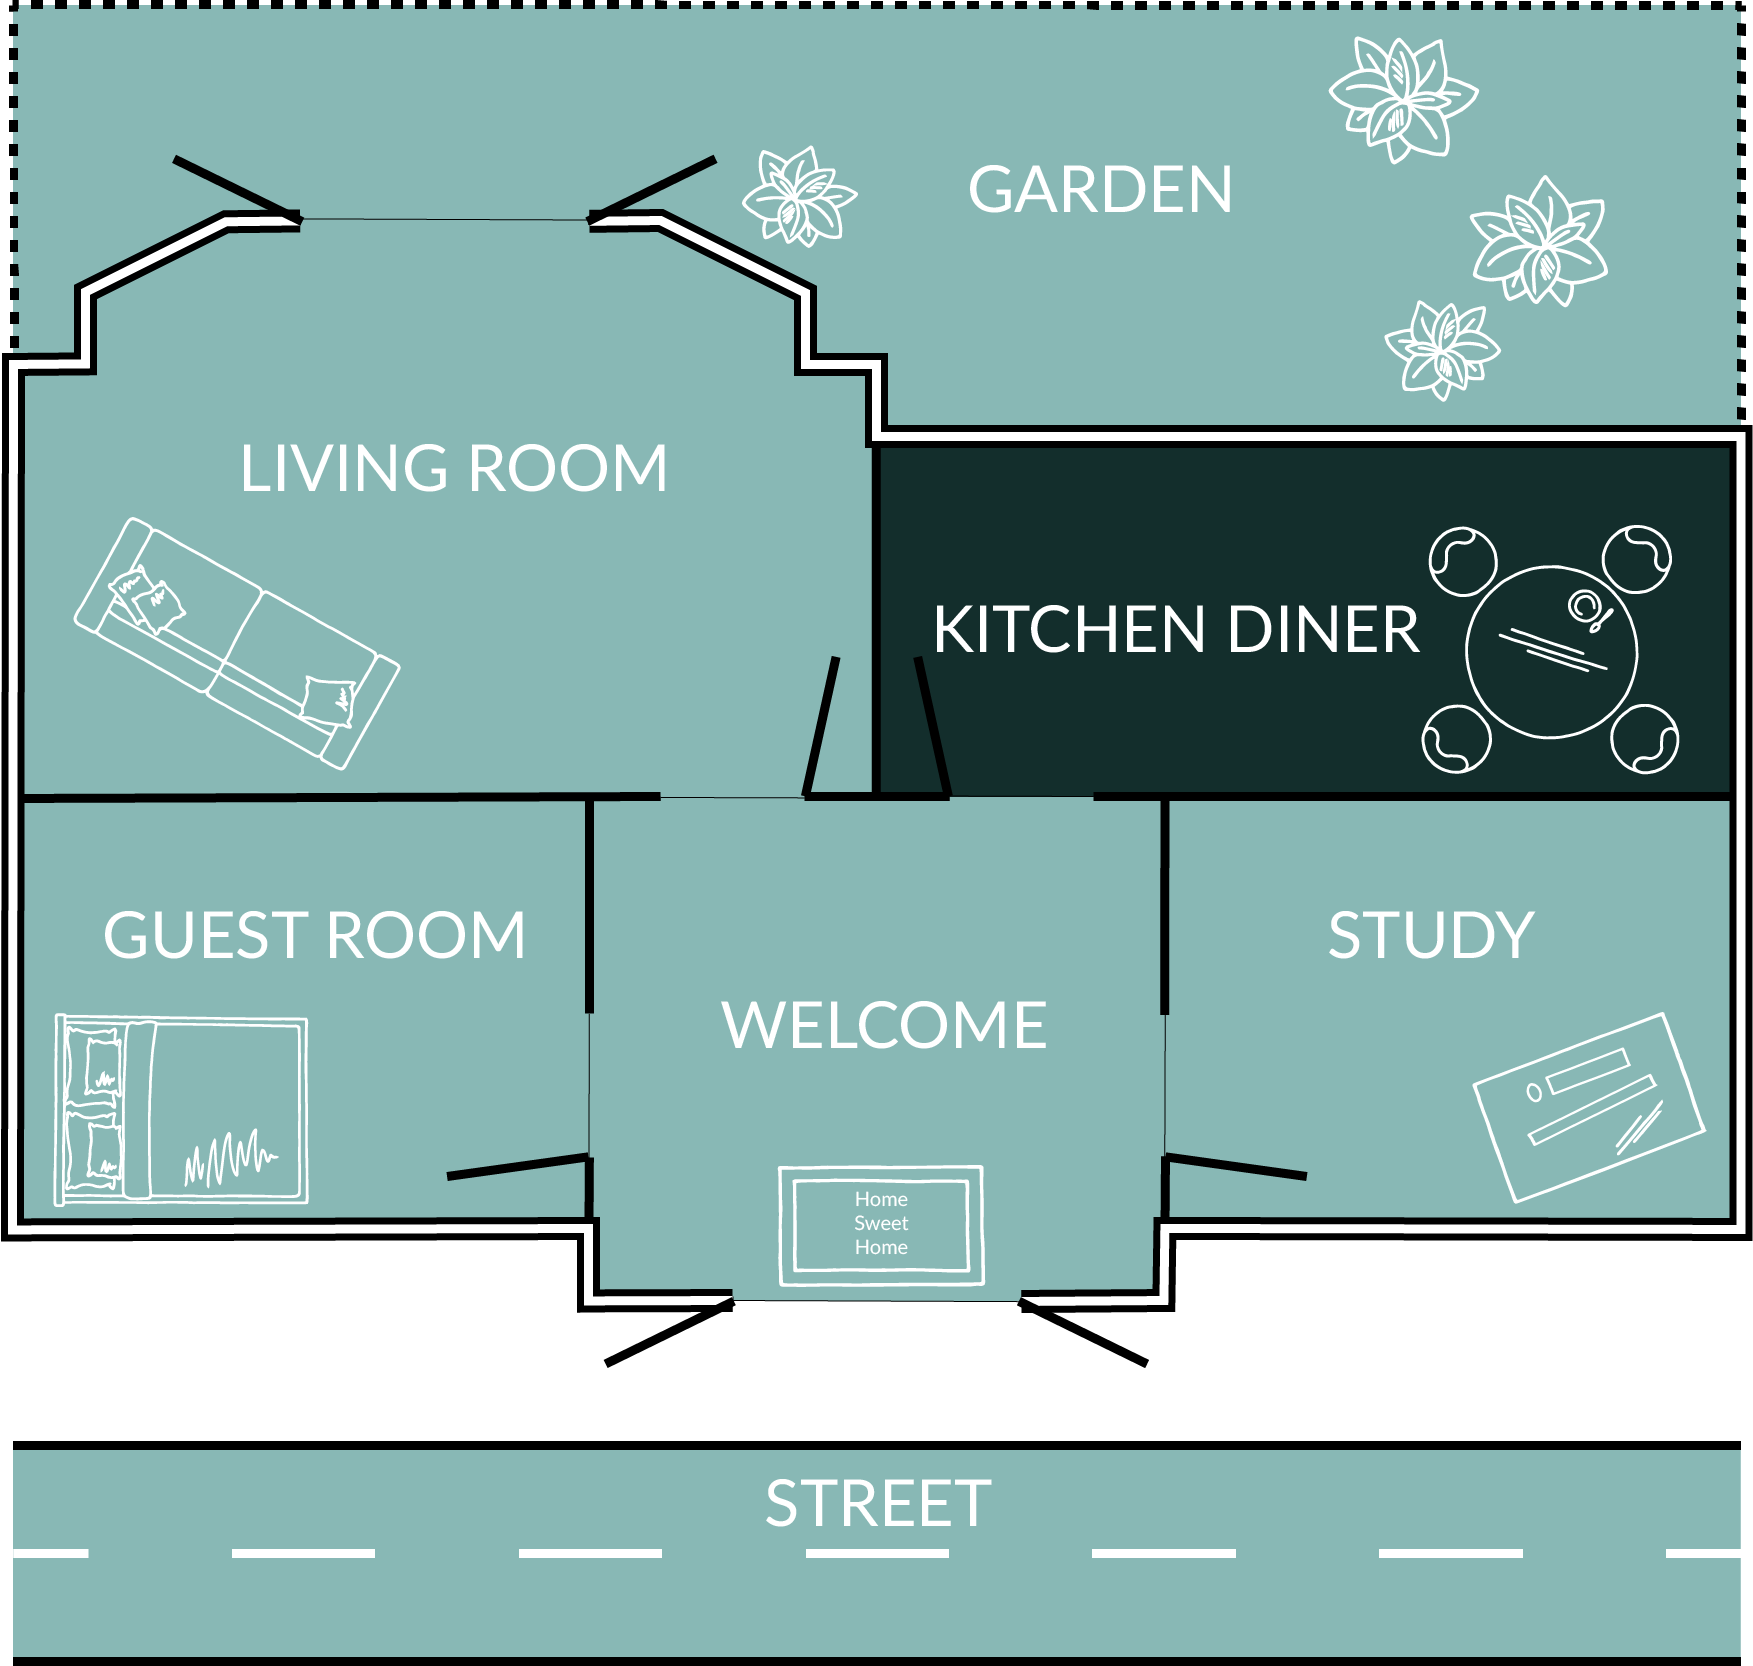 Citylife floor plan - Kitchen Diner